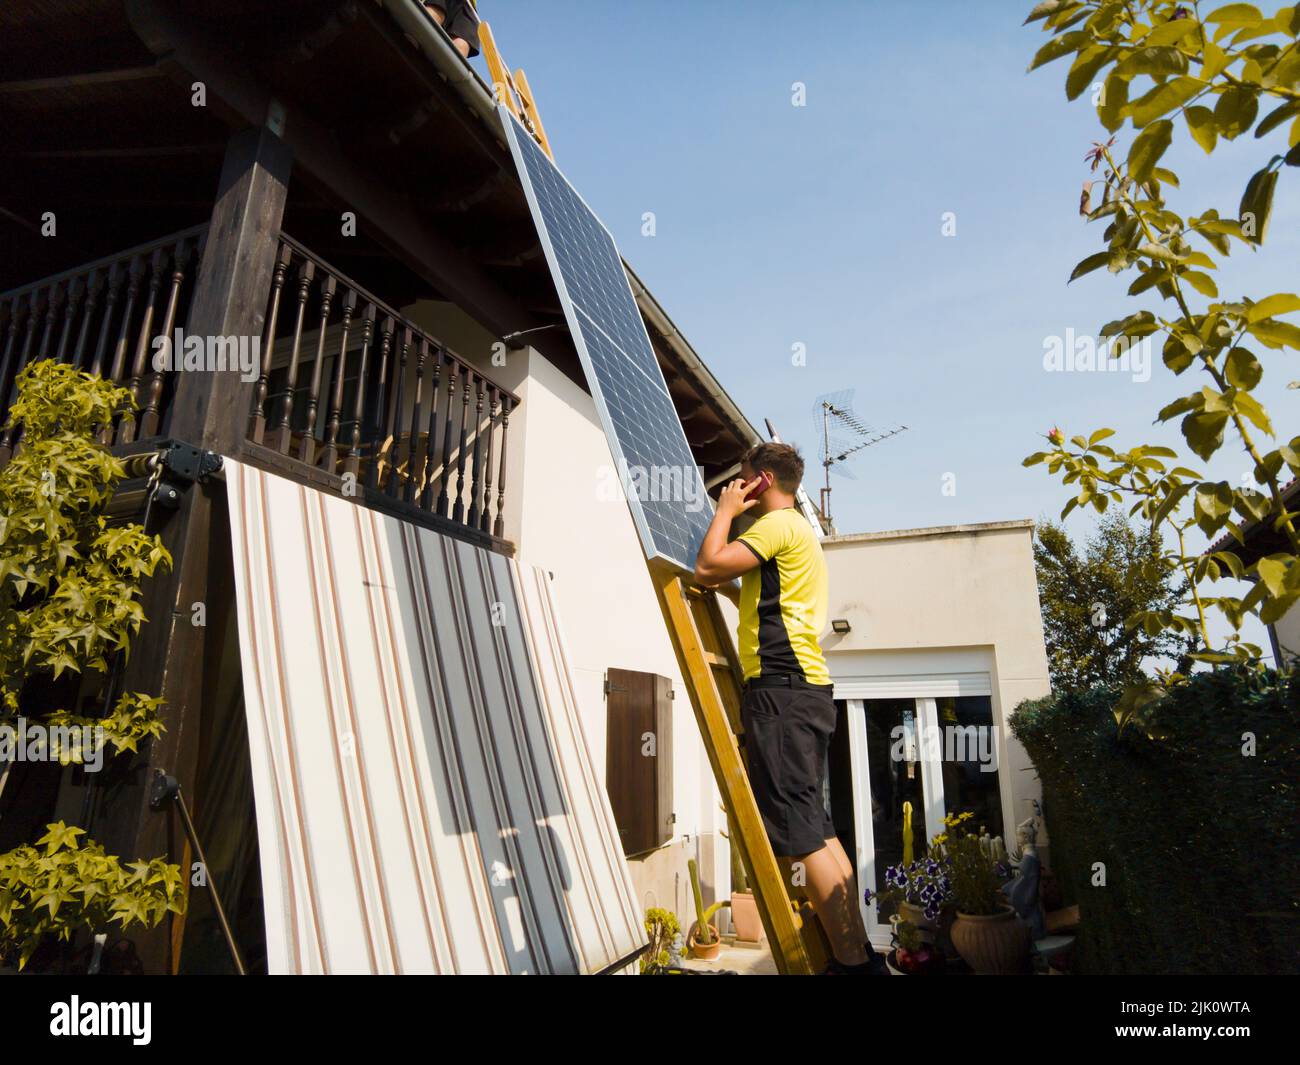 un employé lève le panneau solaire vers le toit, en montant l'échelle. Navarre, Espagne, Europe. Concepts d'environnement et de technologie. Banque D'Images